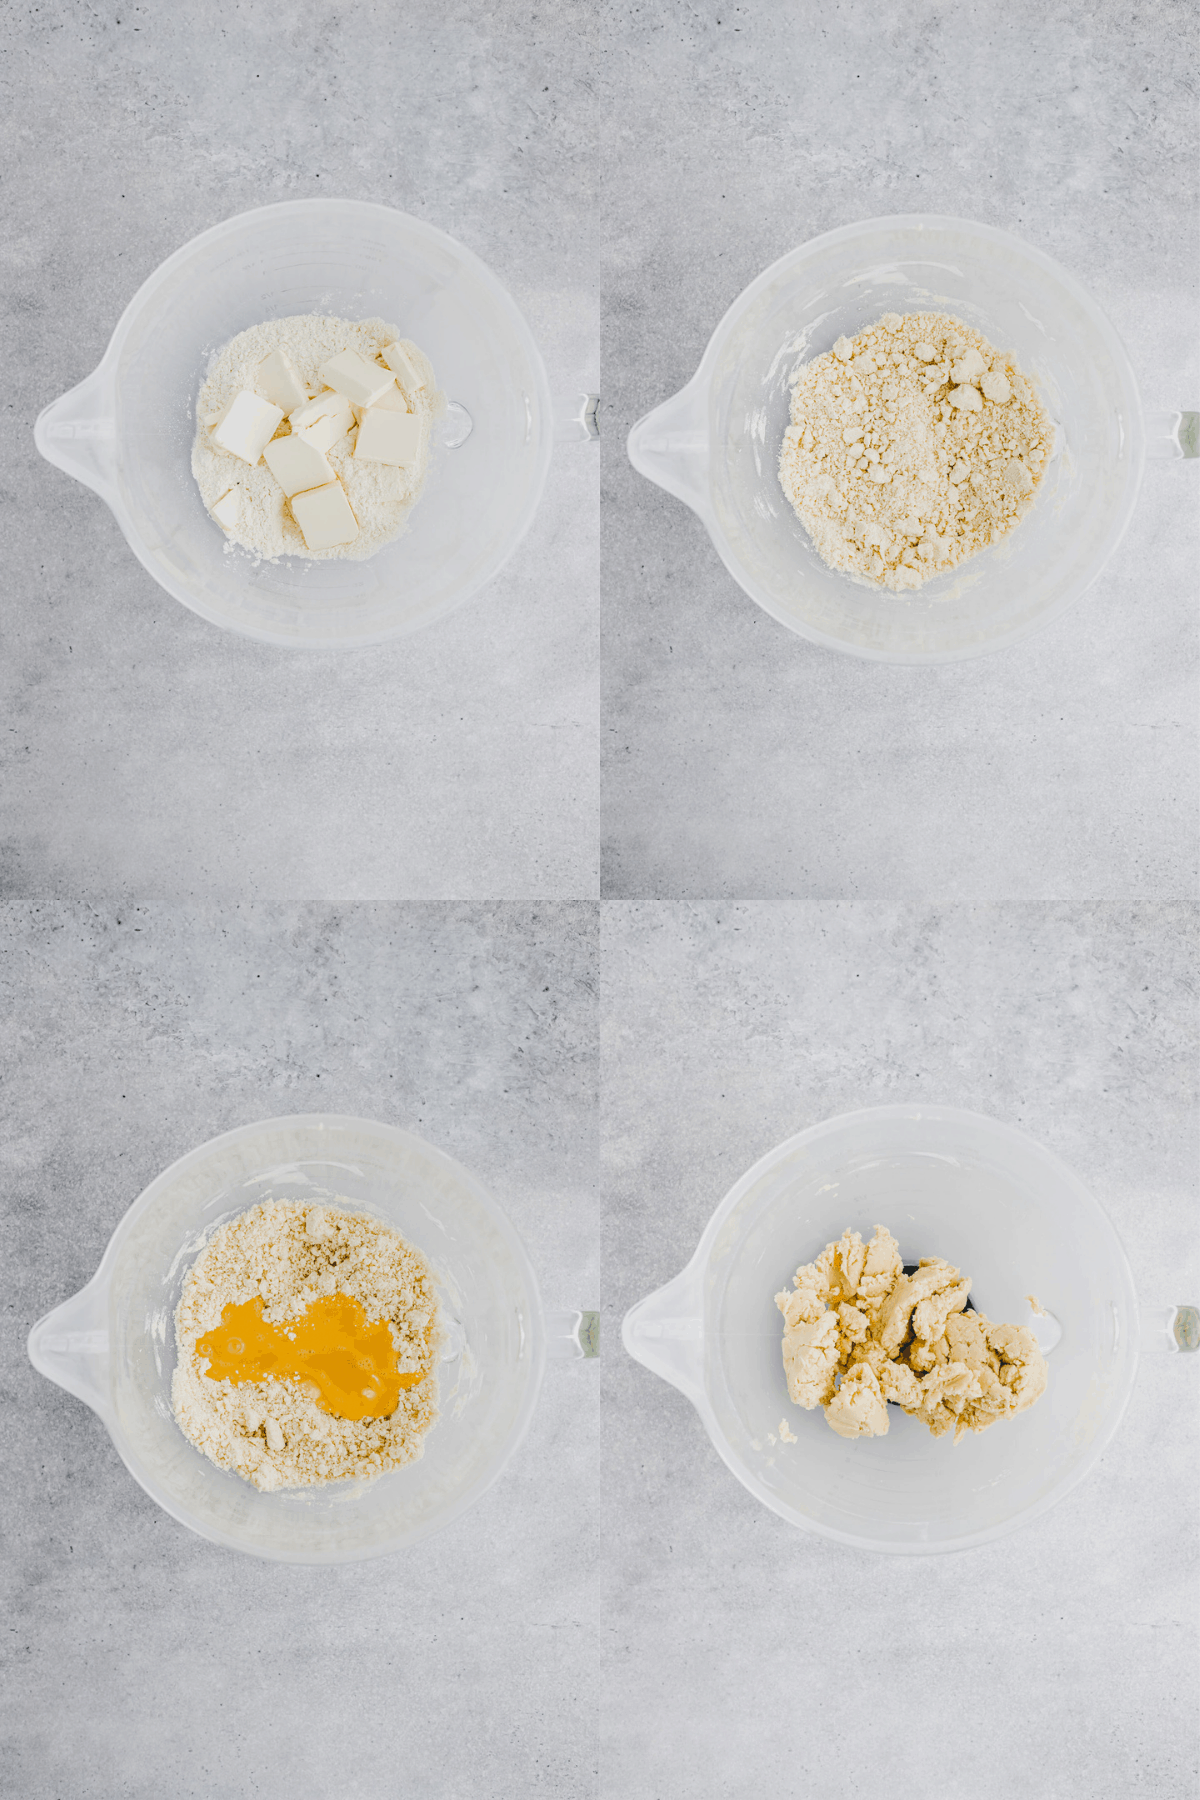 Leek & Cheese Quiche Recipe Step-1-4